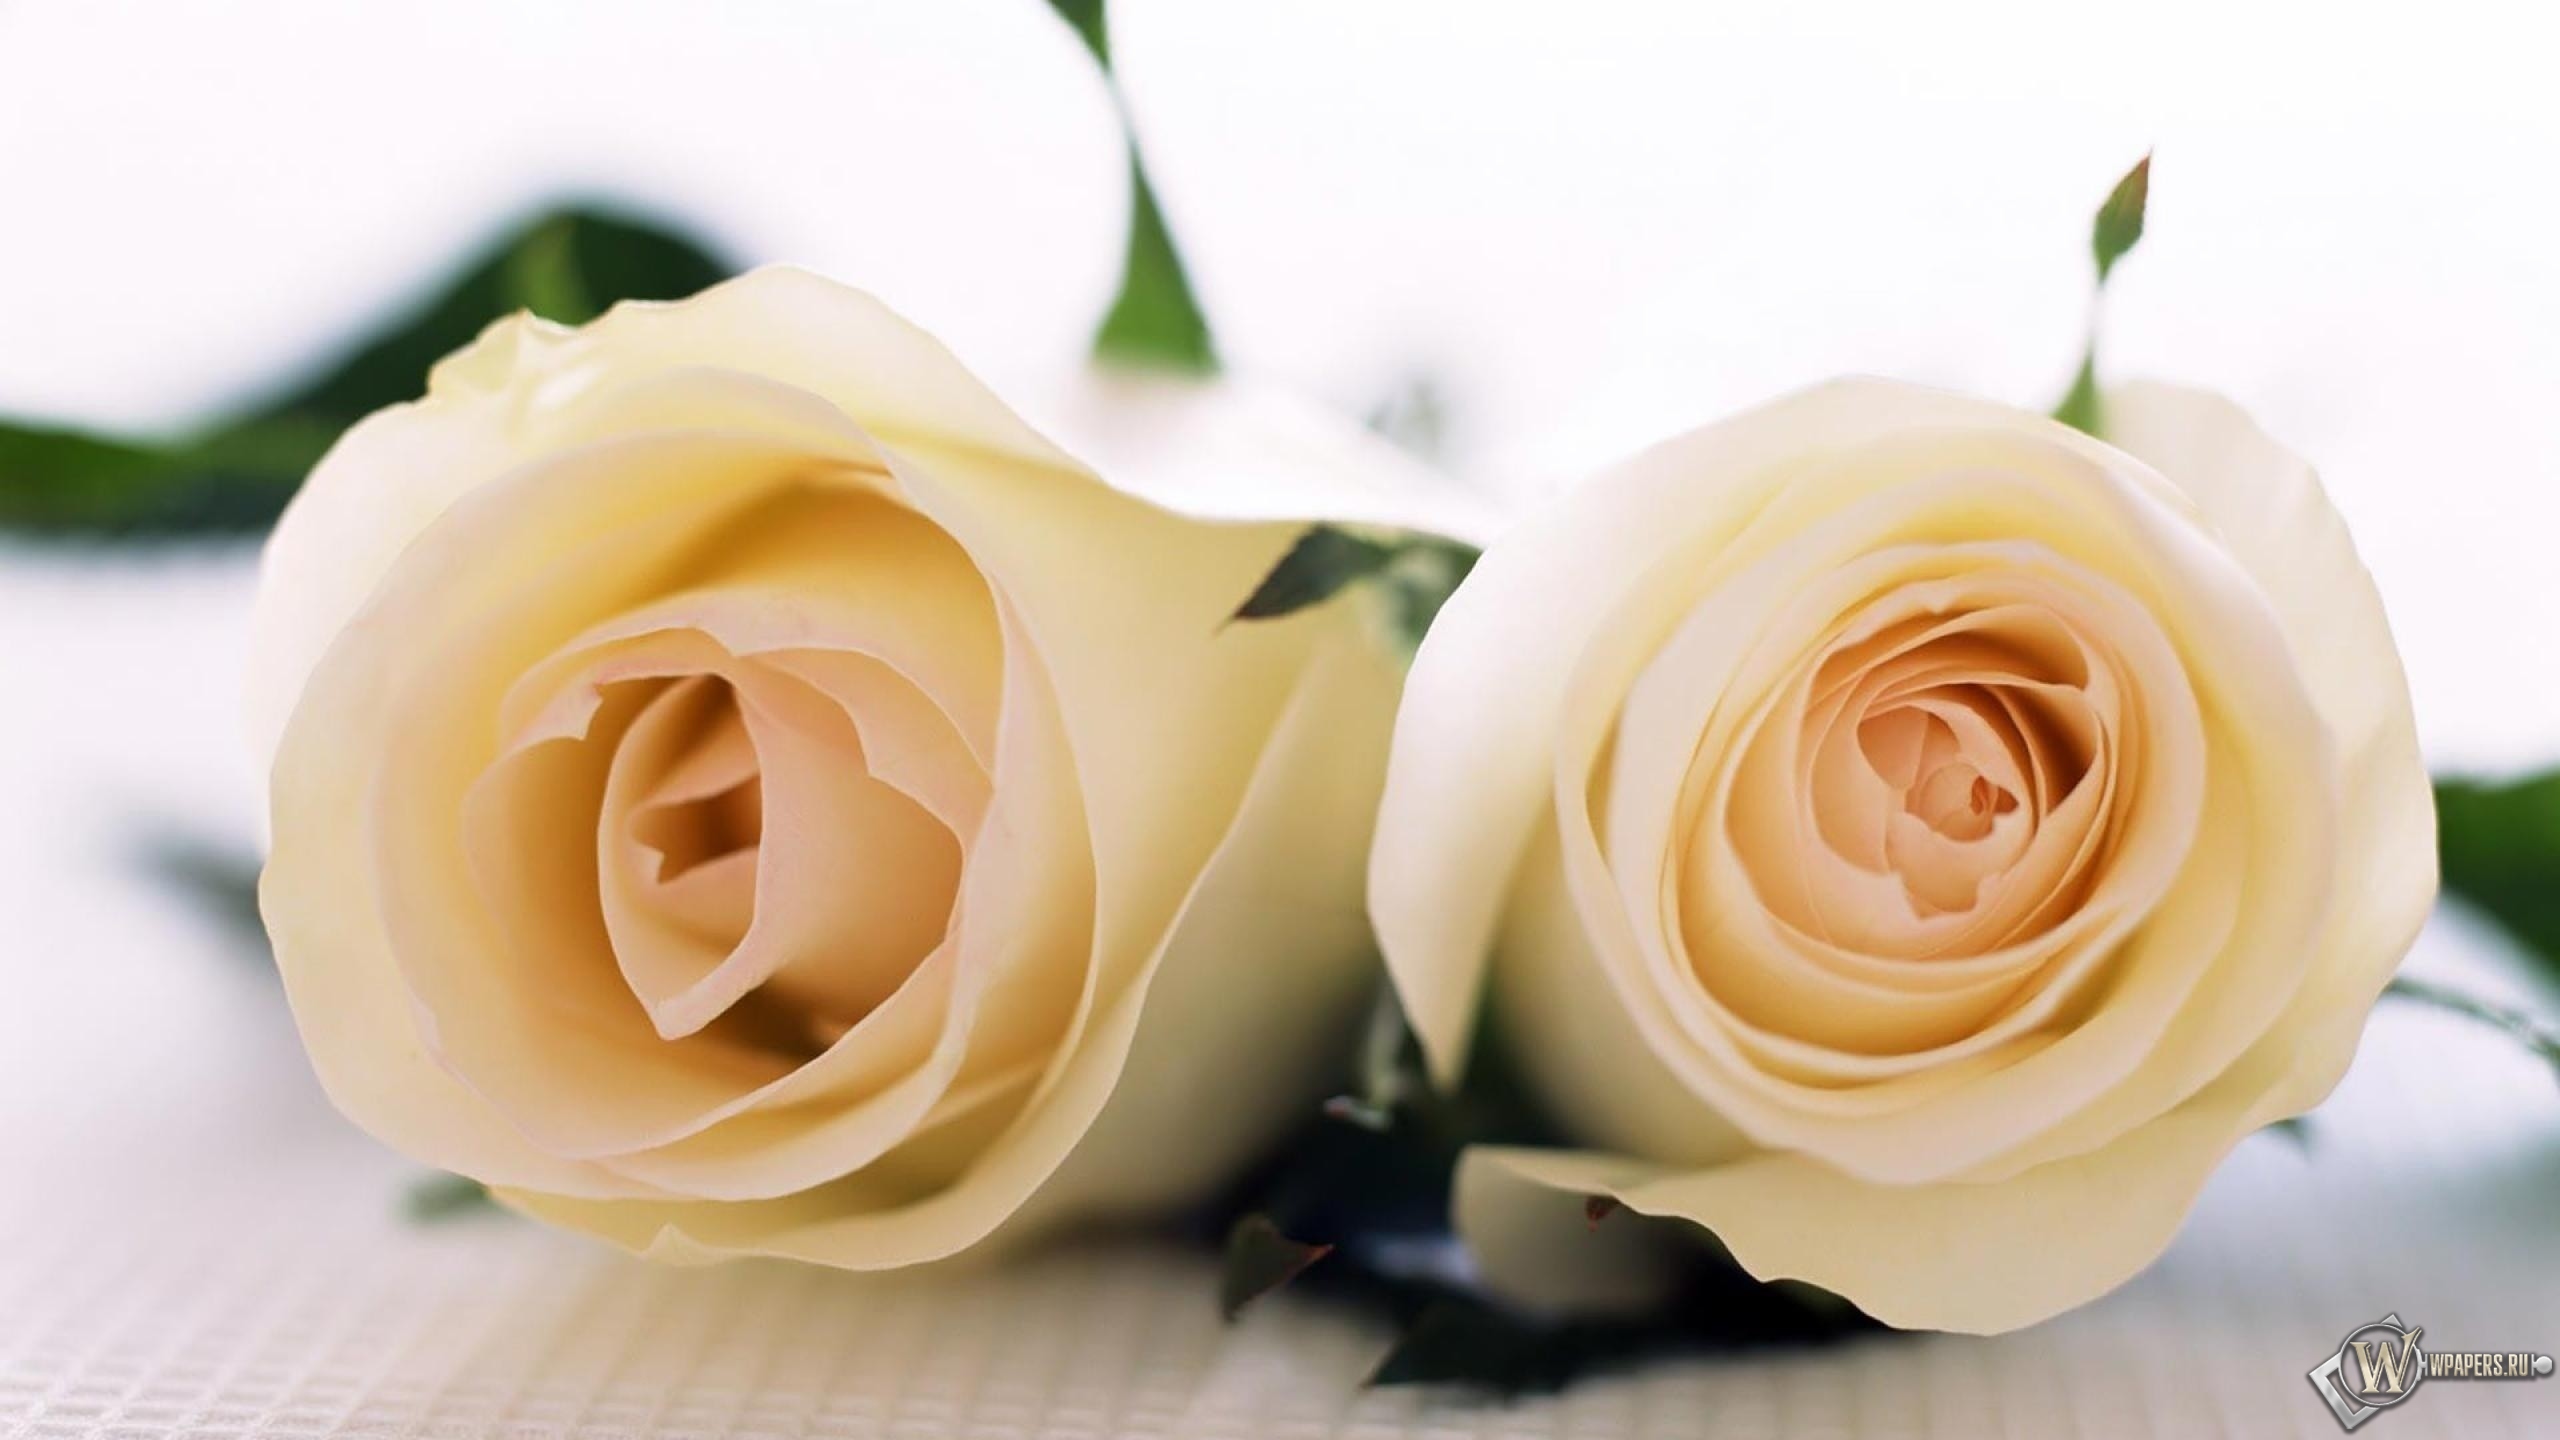 Две белые розы 2560x1440